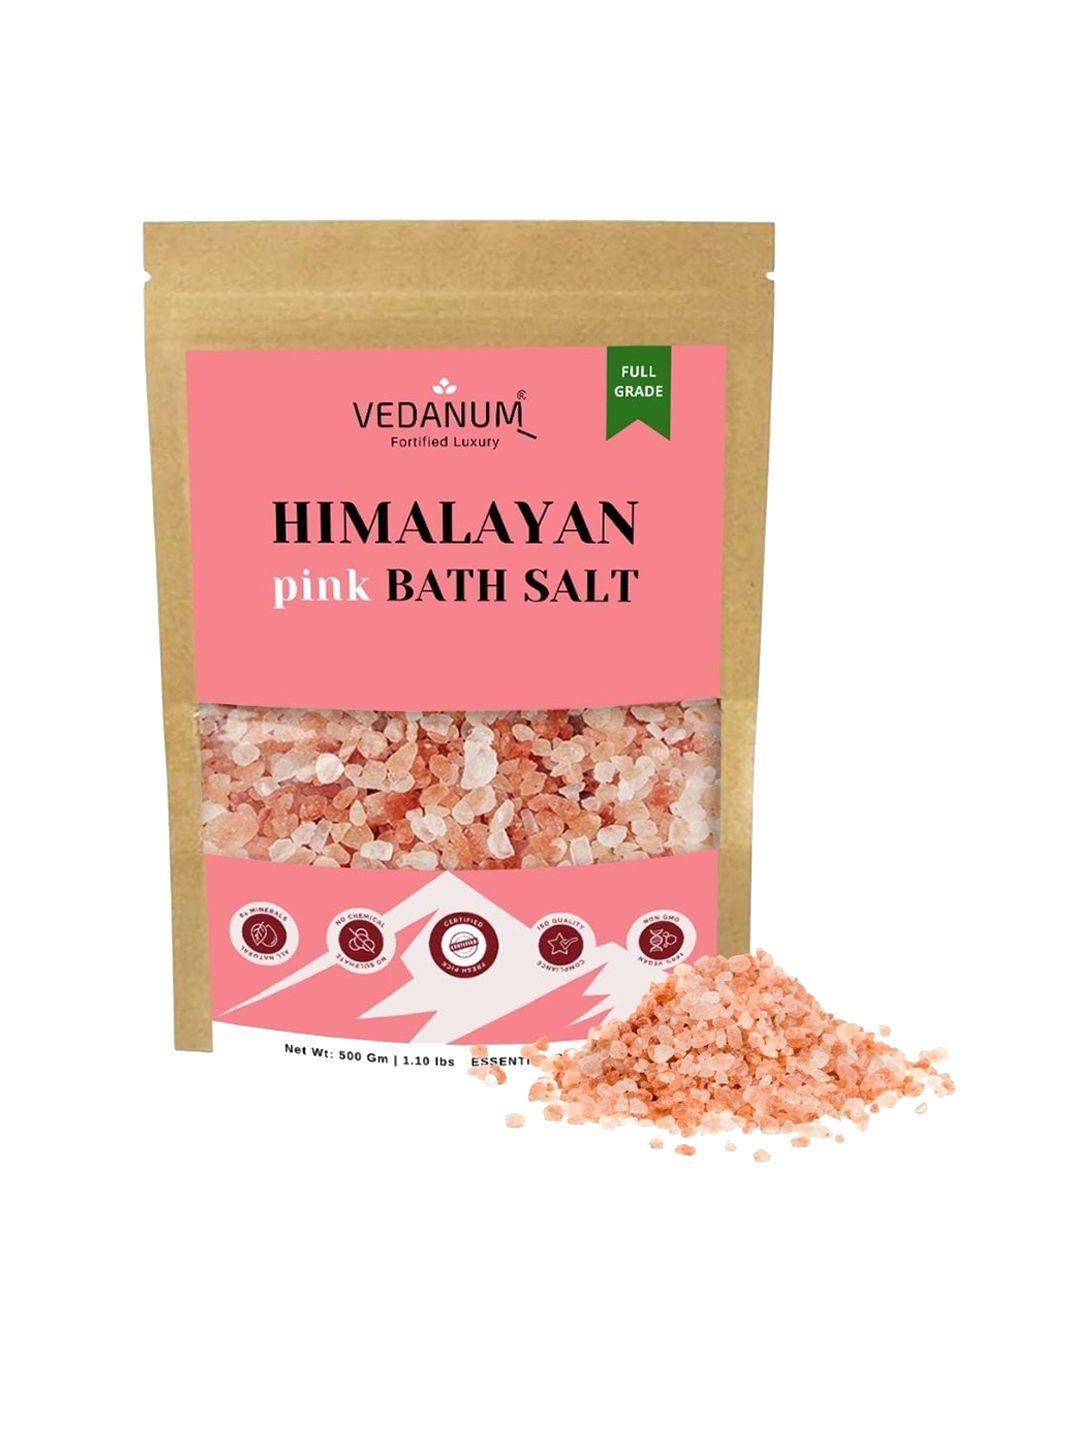 vedanum fortified luxury himalayan pink bath salt - 500 gm